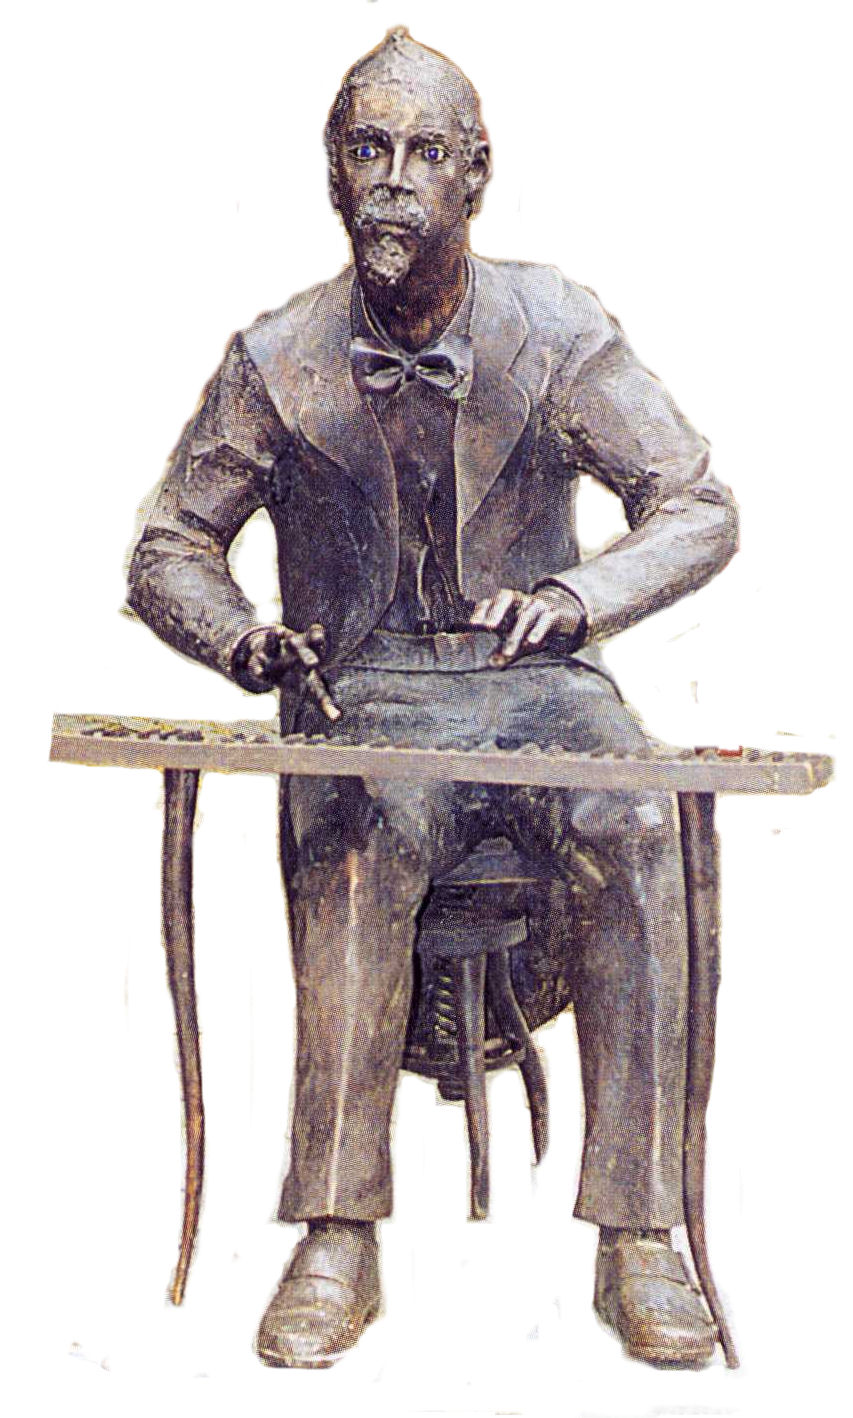 Statue of Adolf von Henselt by Clemens Heinl